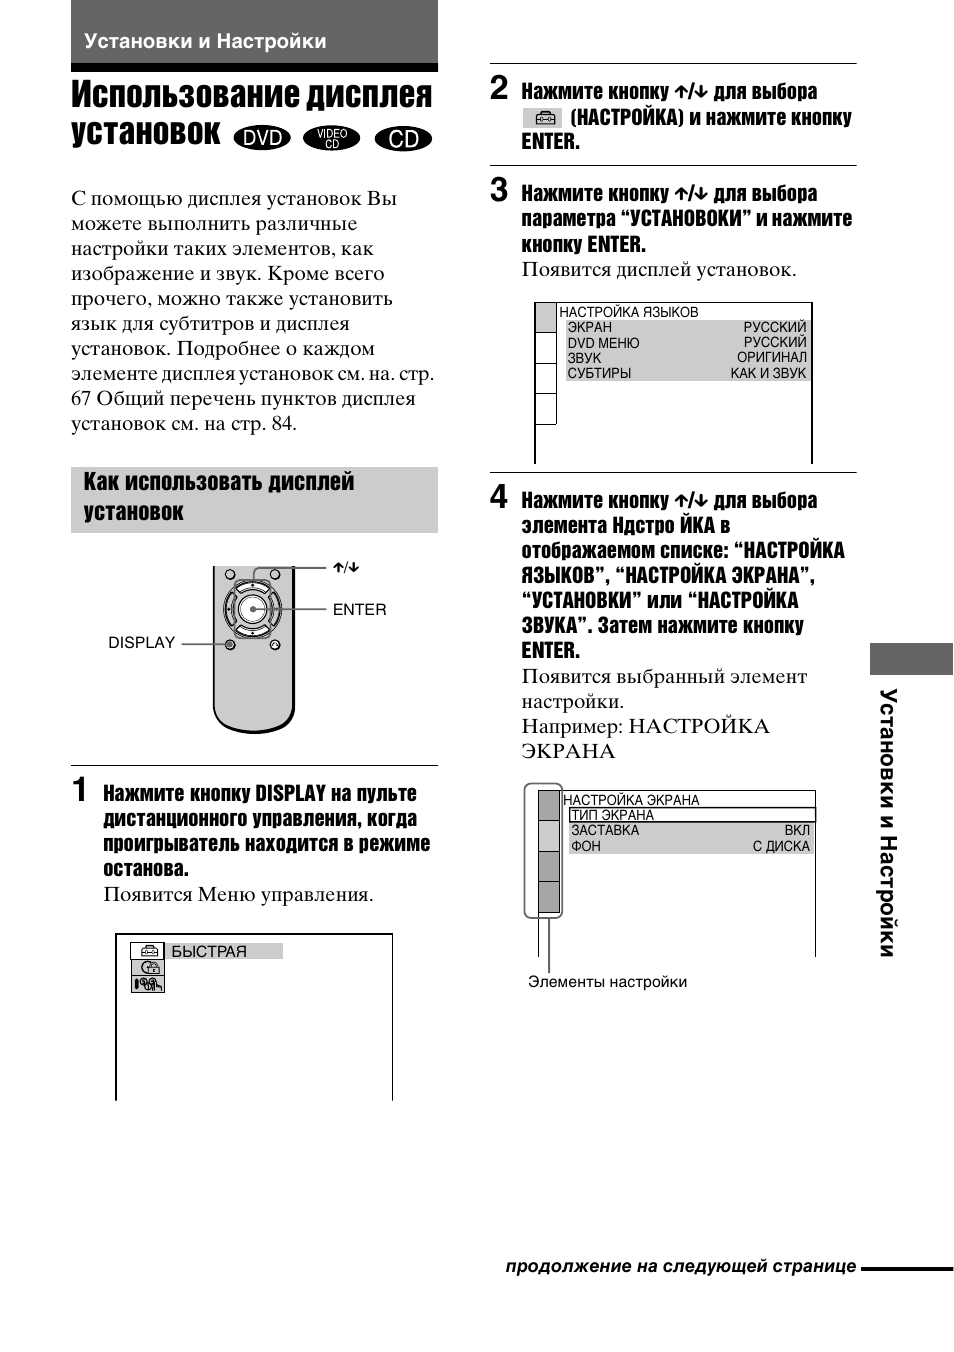 Установки и настройки, Использование дисплея установок, Как использовать дисплей установок | Инструкция по эксплуатации Sony DVP-NS300 | Страница 65 / 88